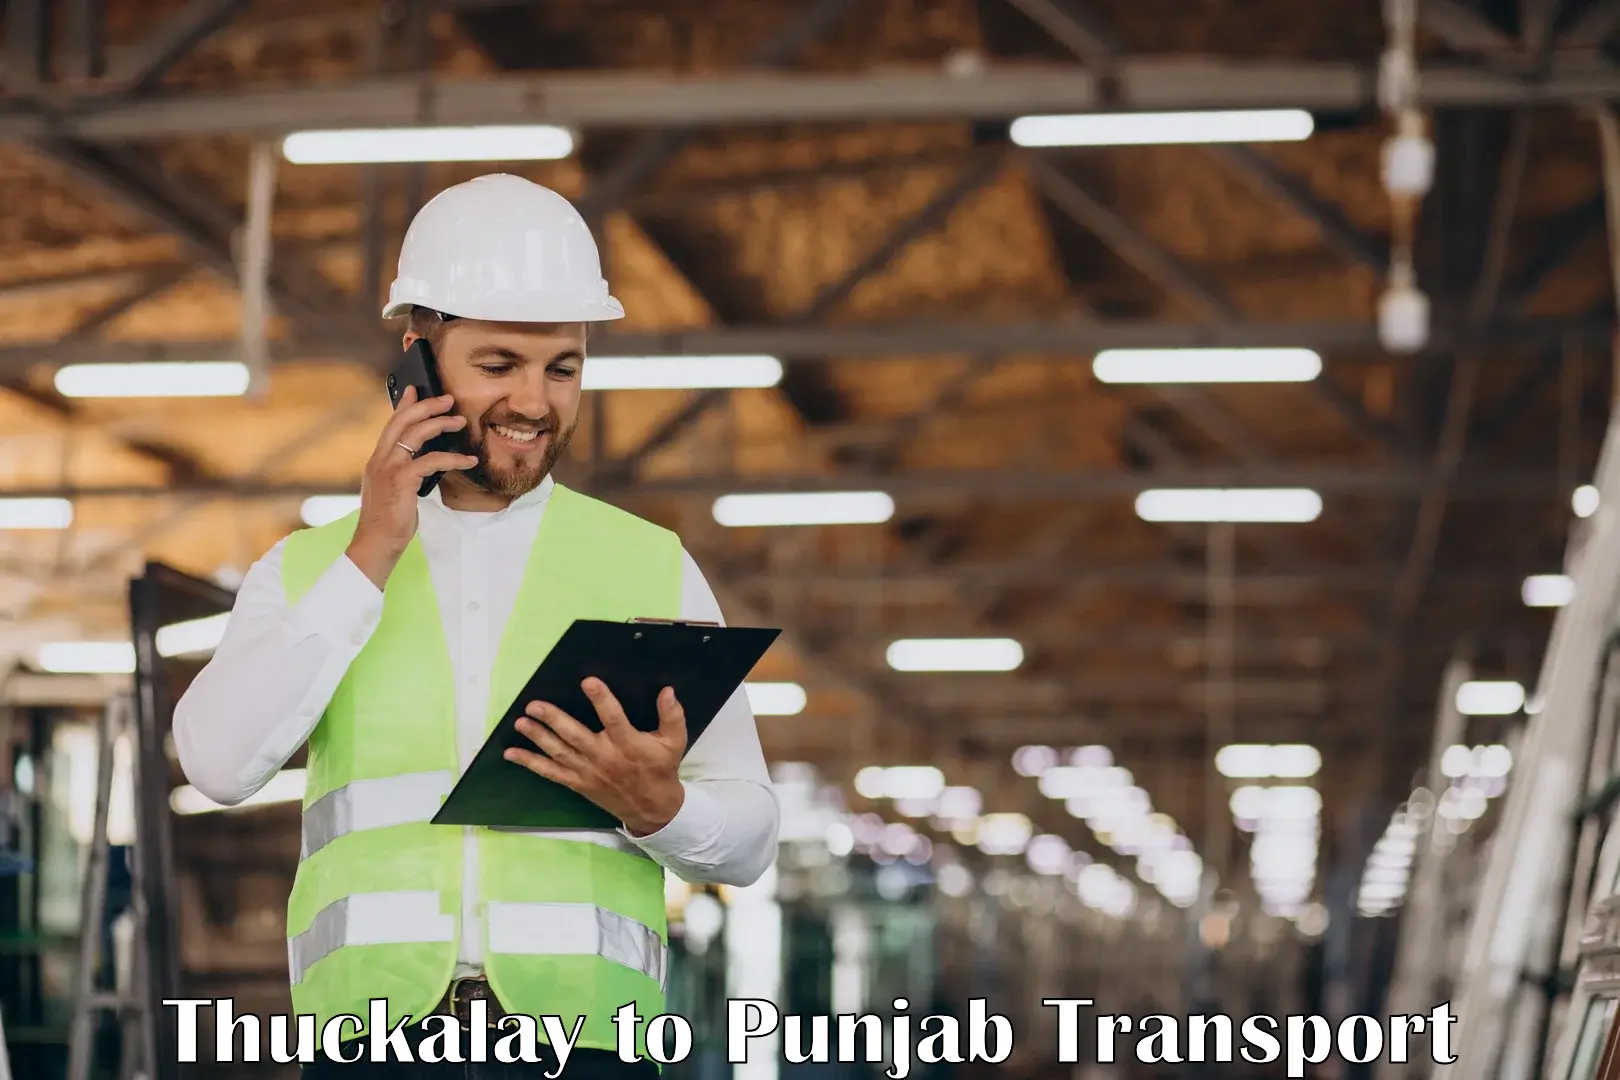 Container transportation services Thuckalay to Tarsikka